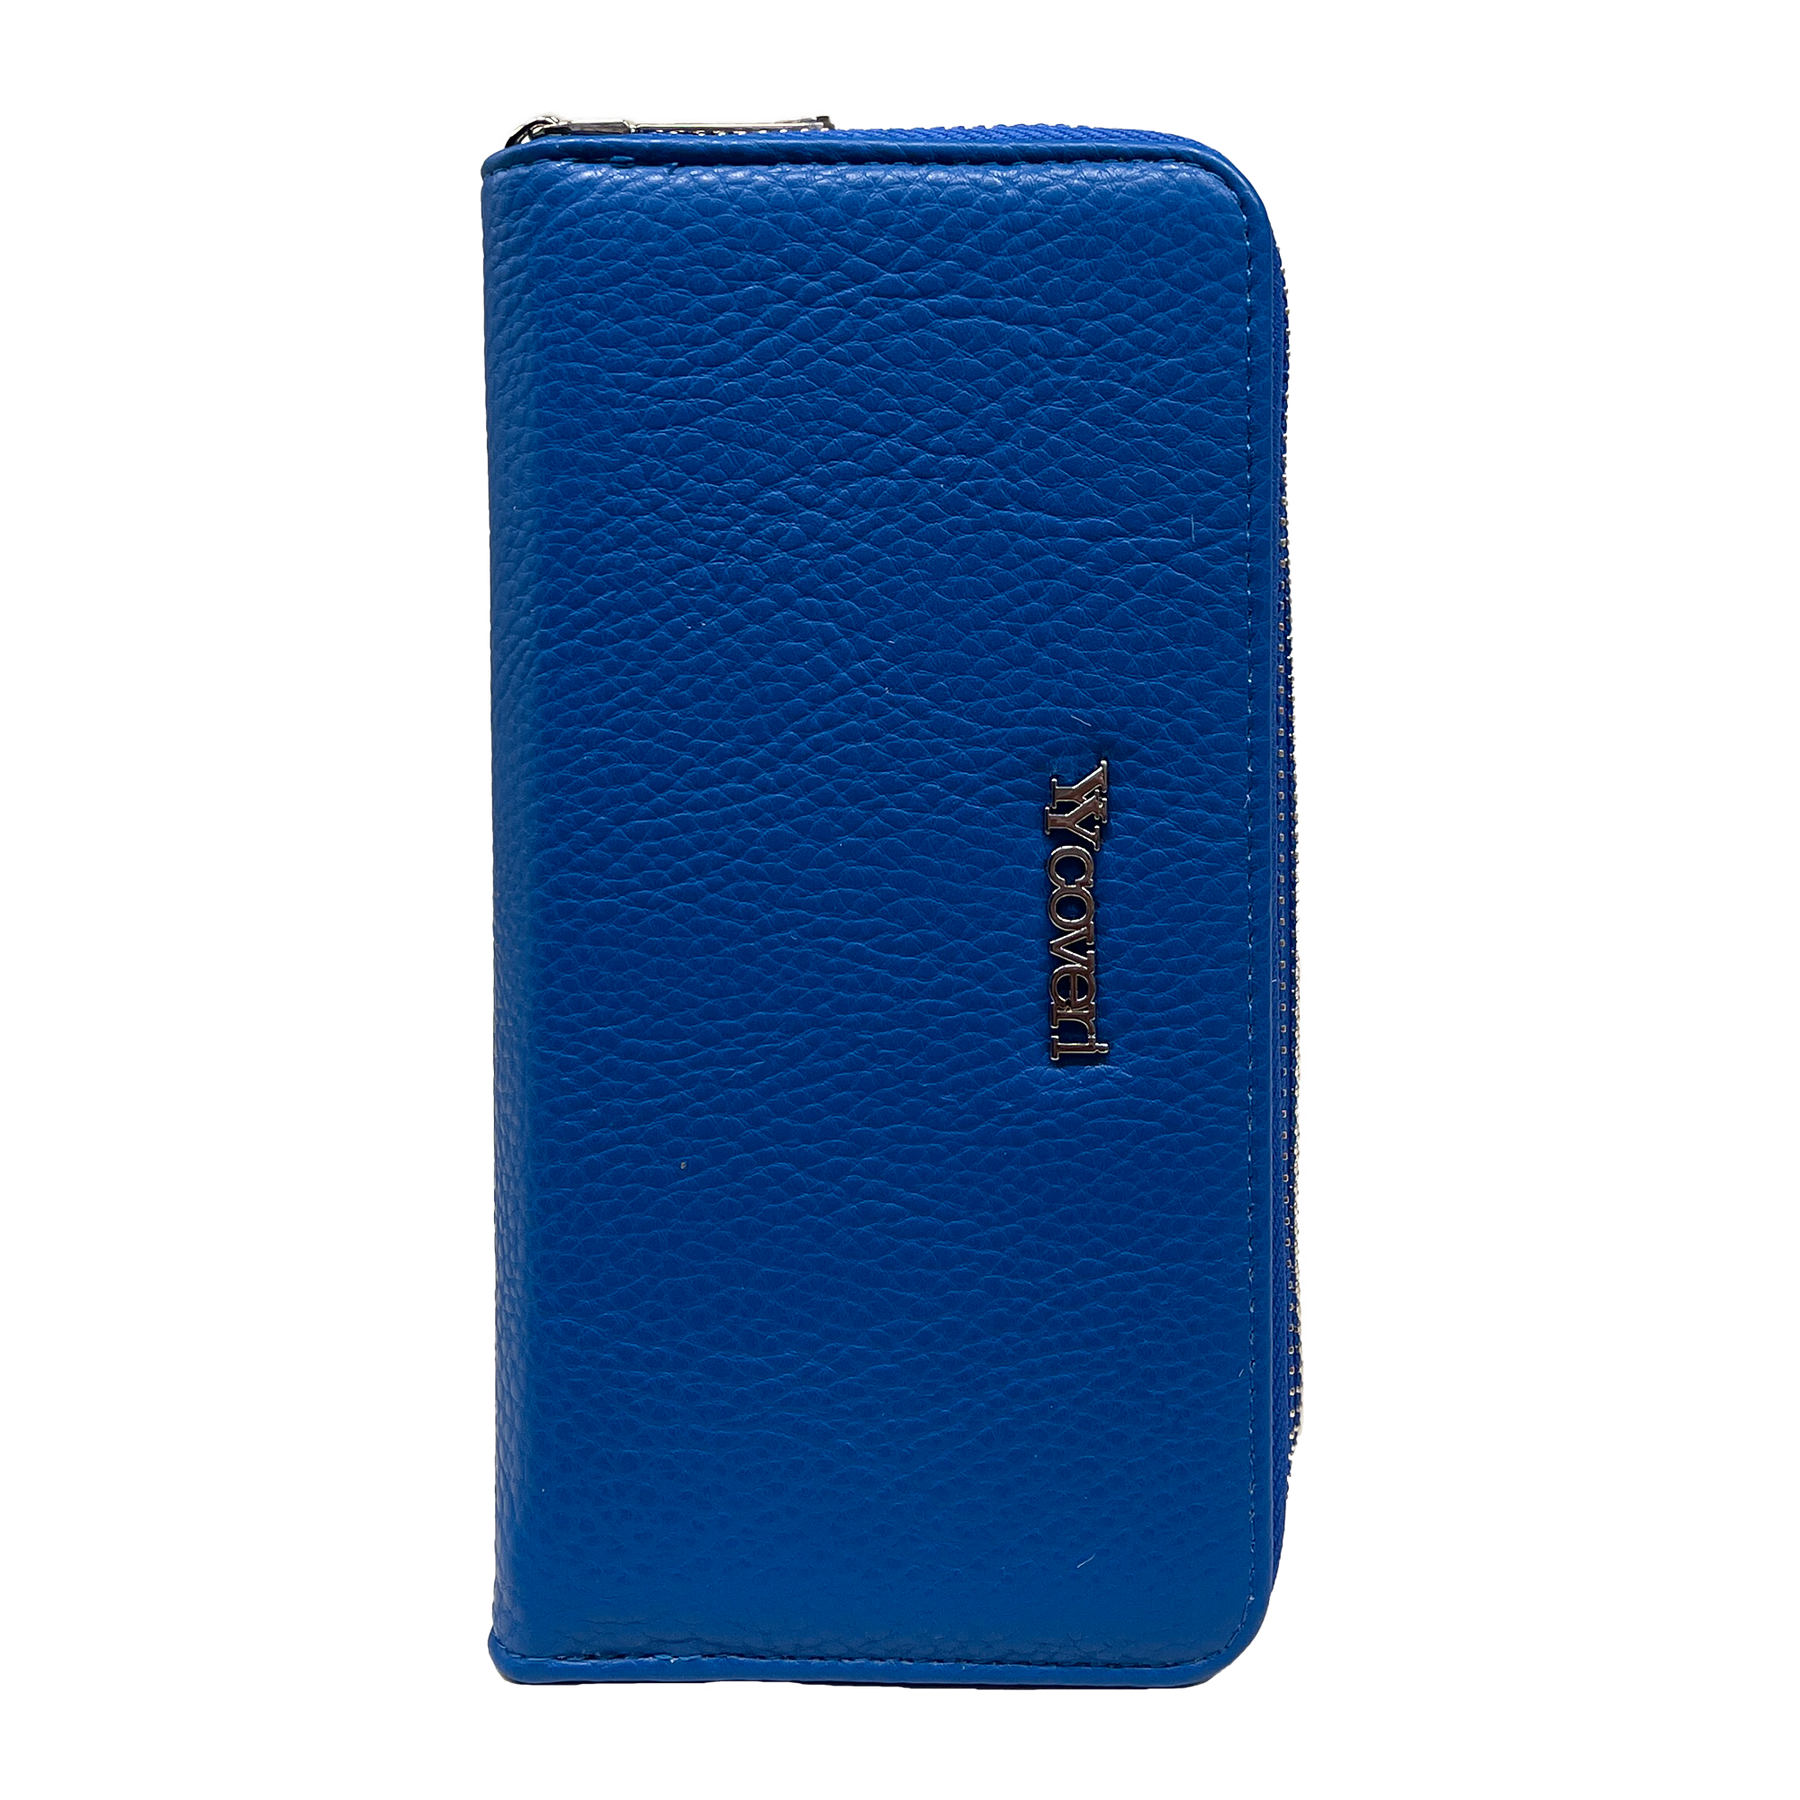 You yuang Coveri Premium Blauwe Portemonnee met Meerdere Compartimenten - Veilig en Stijlvol